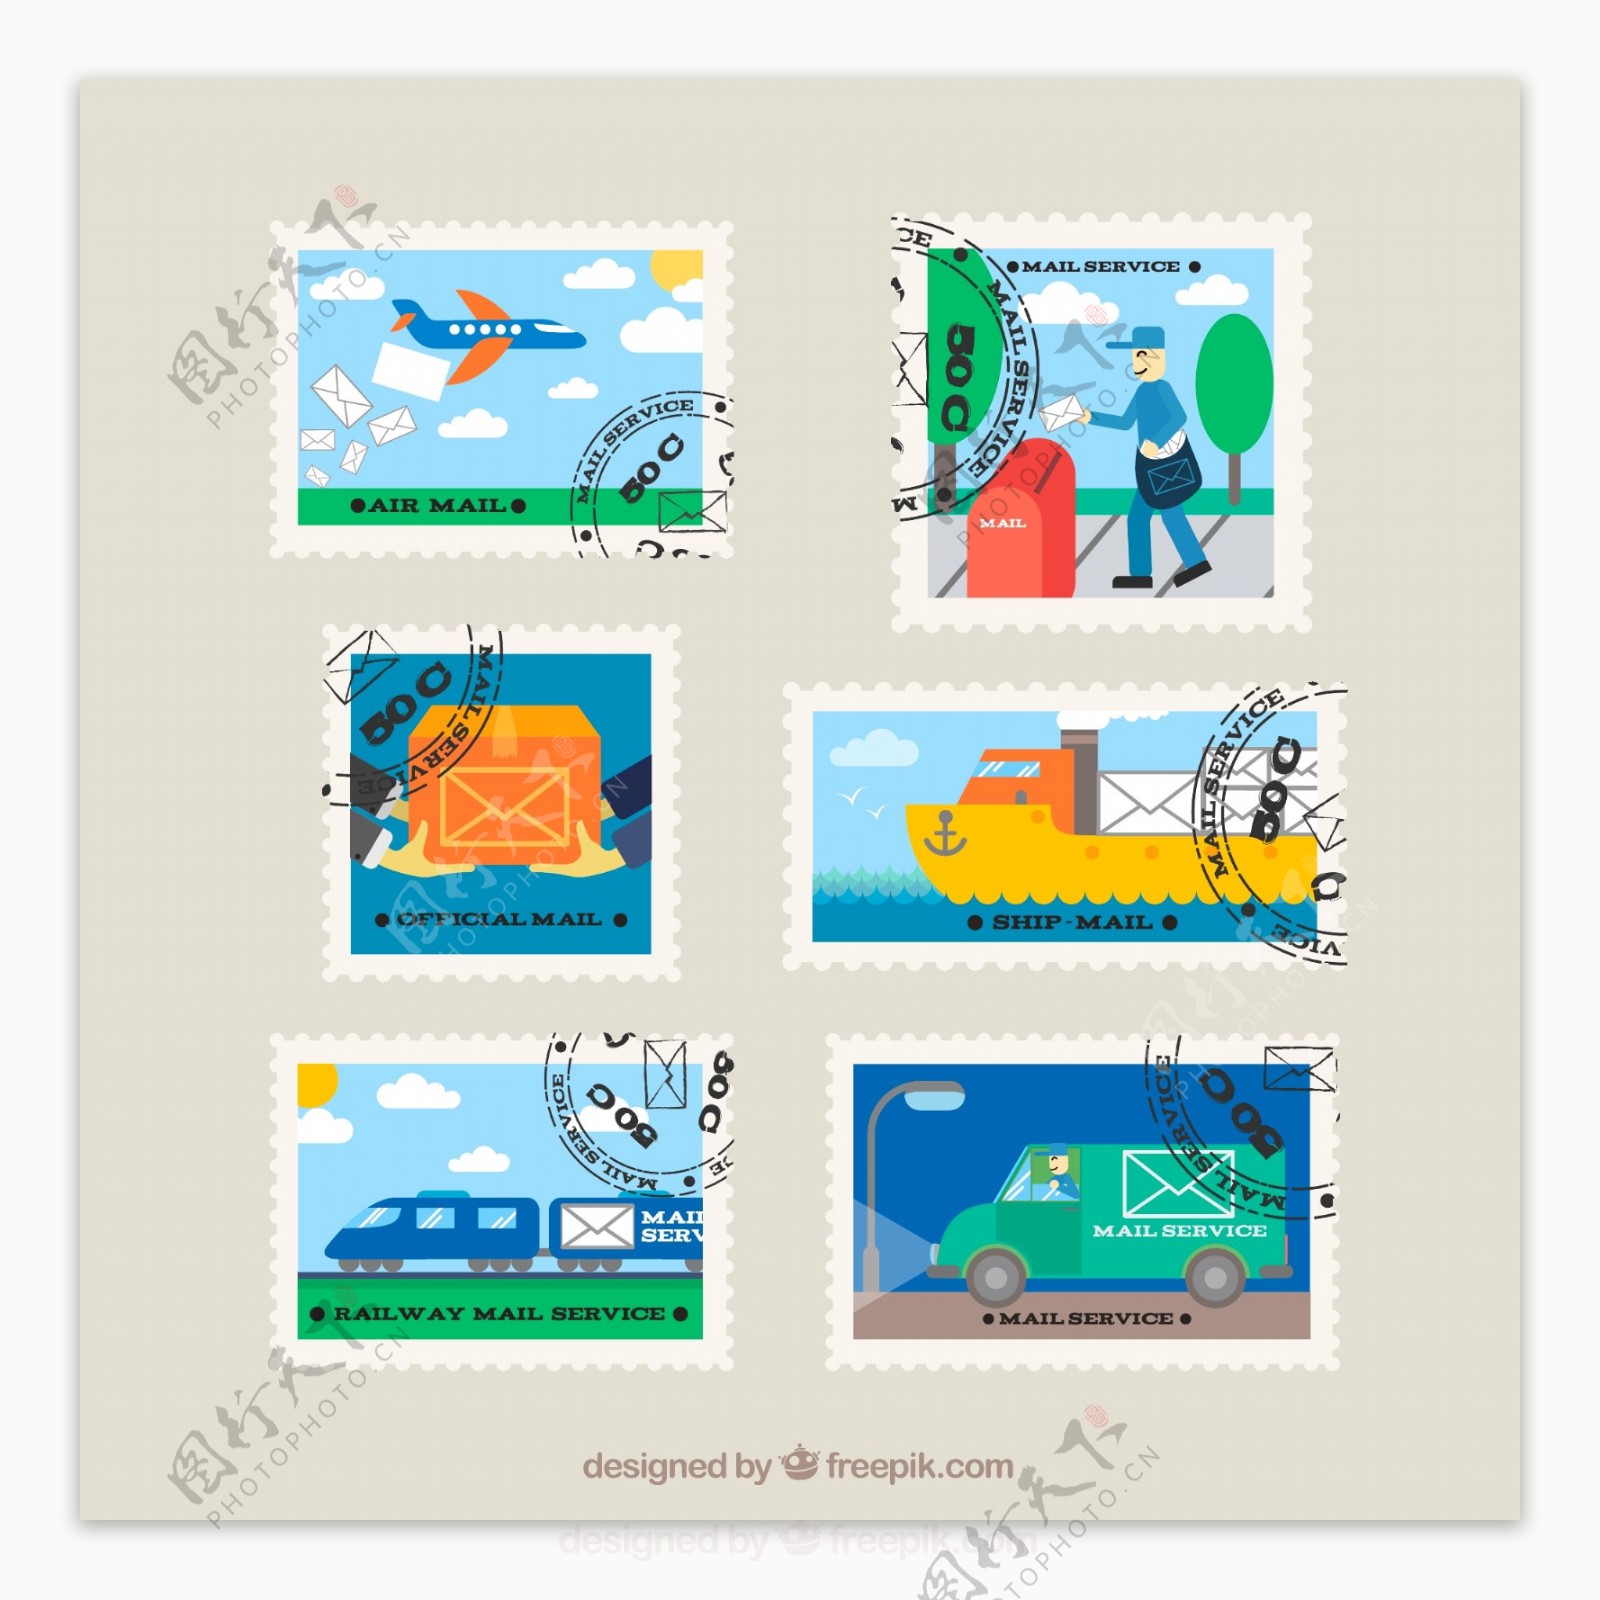 6款创意信件邮票设计矢量素材